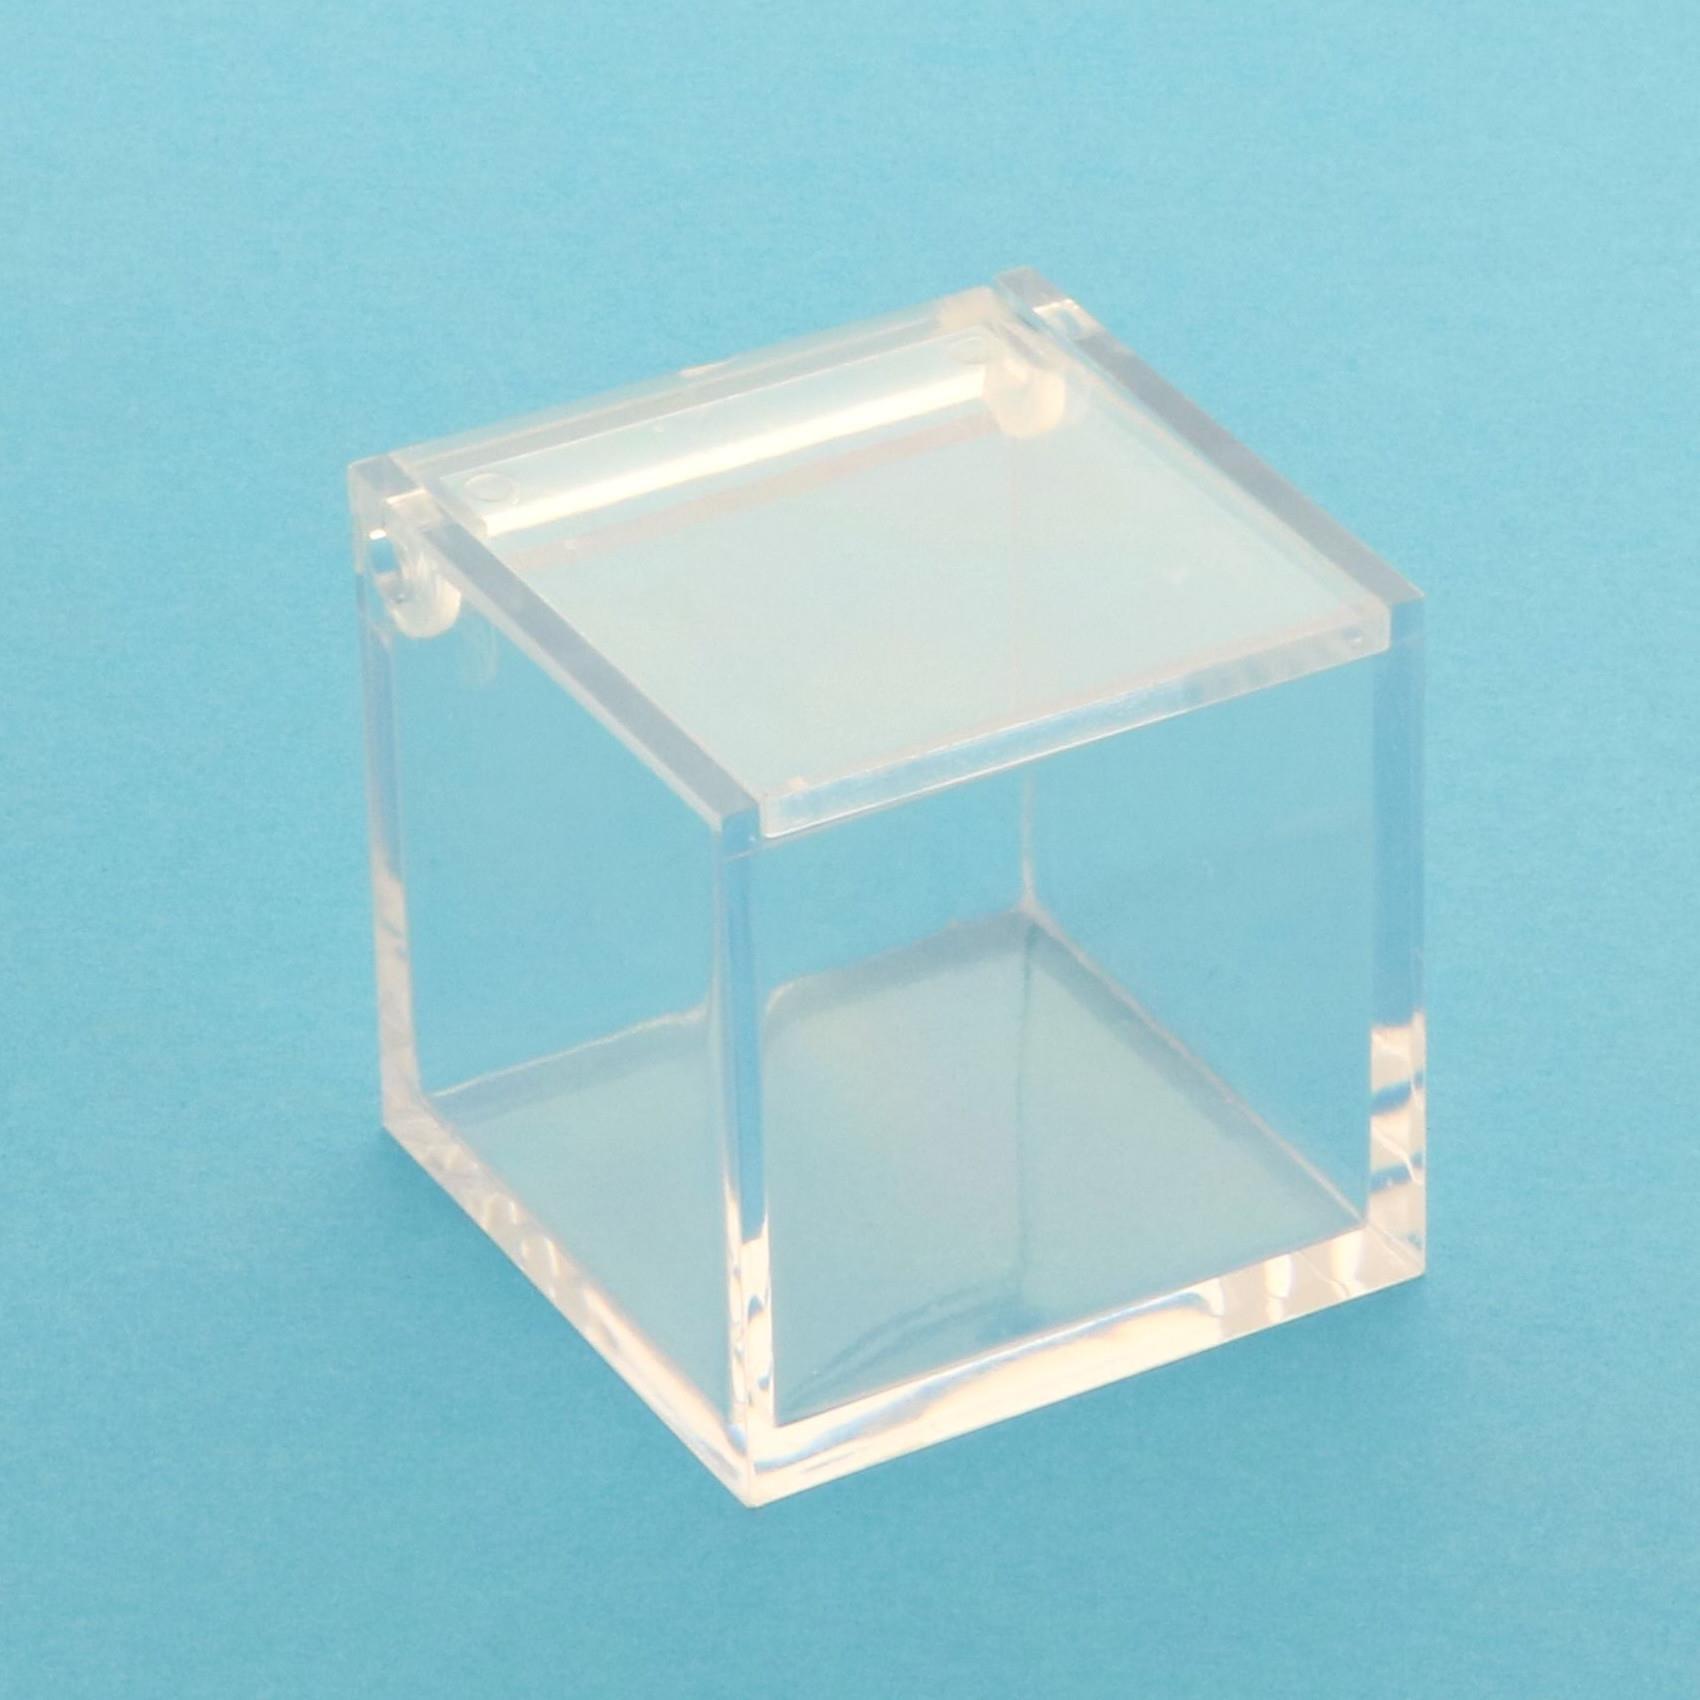 12 Pezzi - Cubo Box Trasparente in Plexiglass 6x6x6 cm